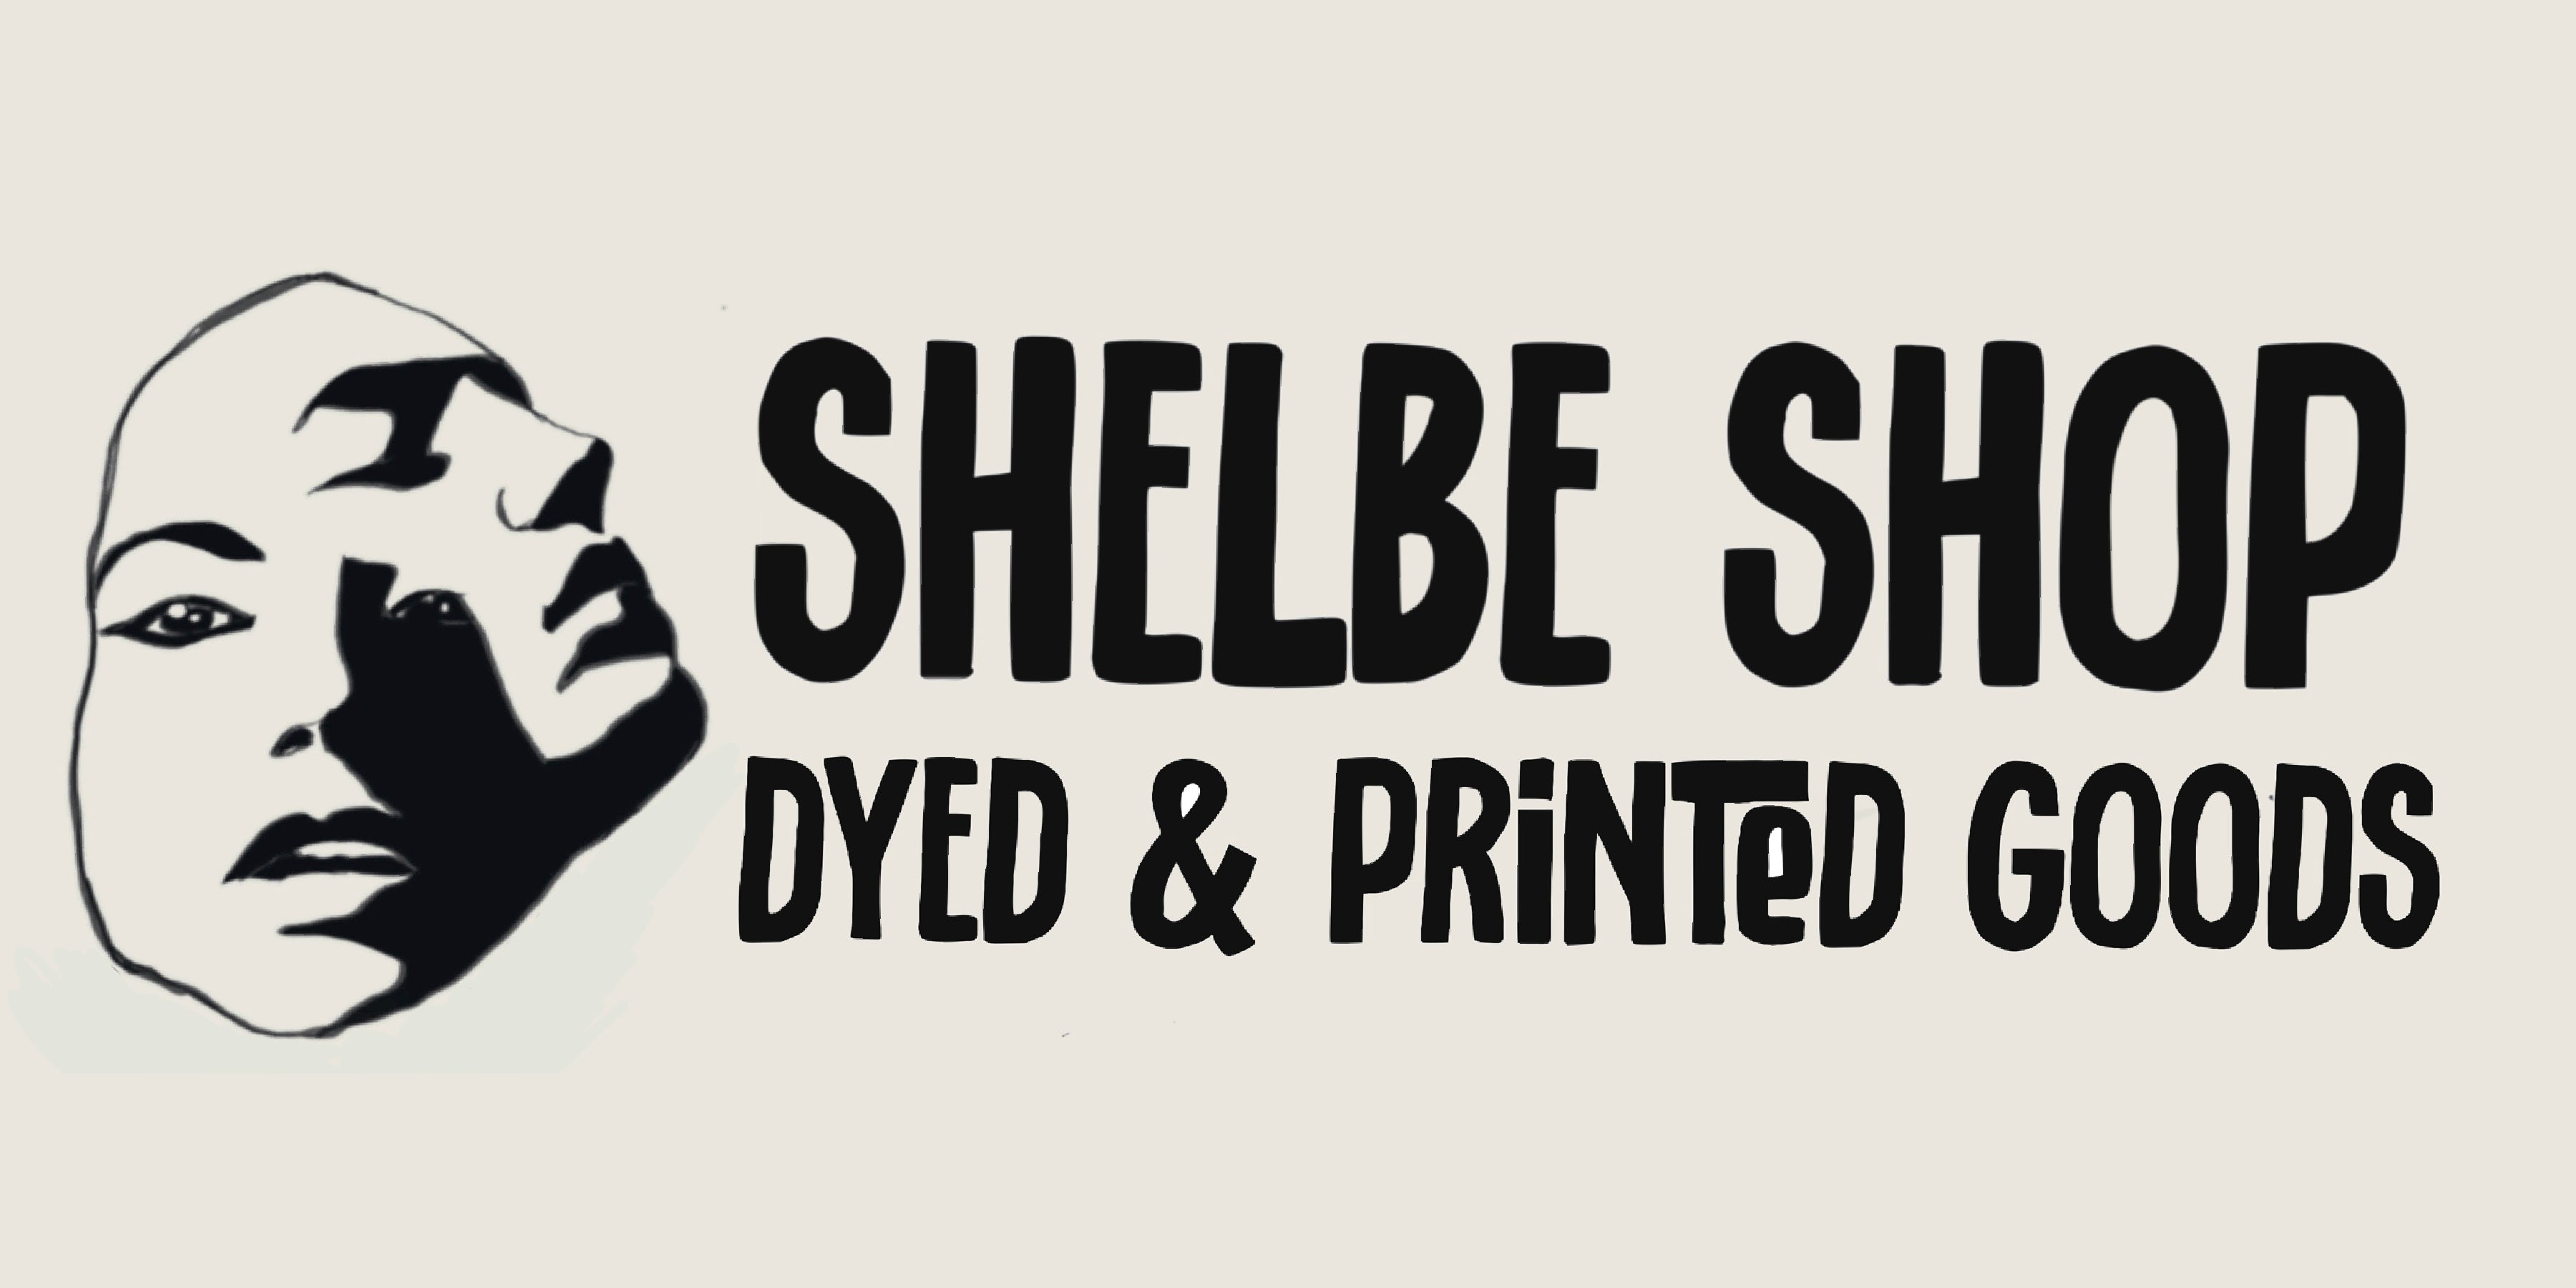 shelbe shop